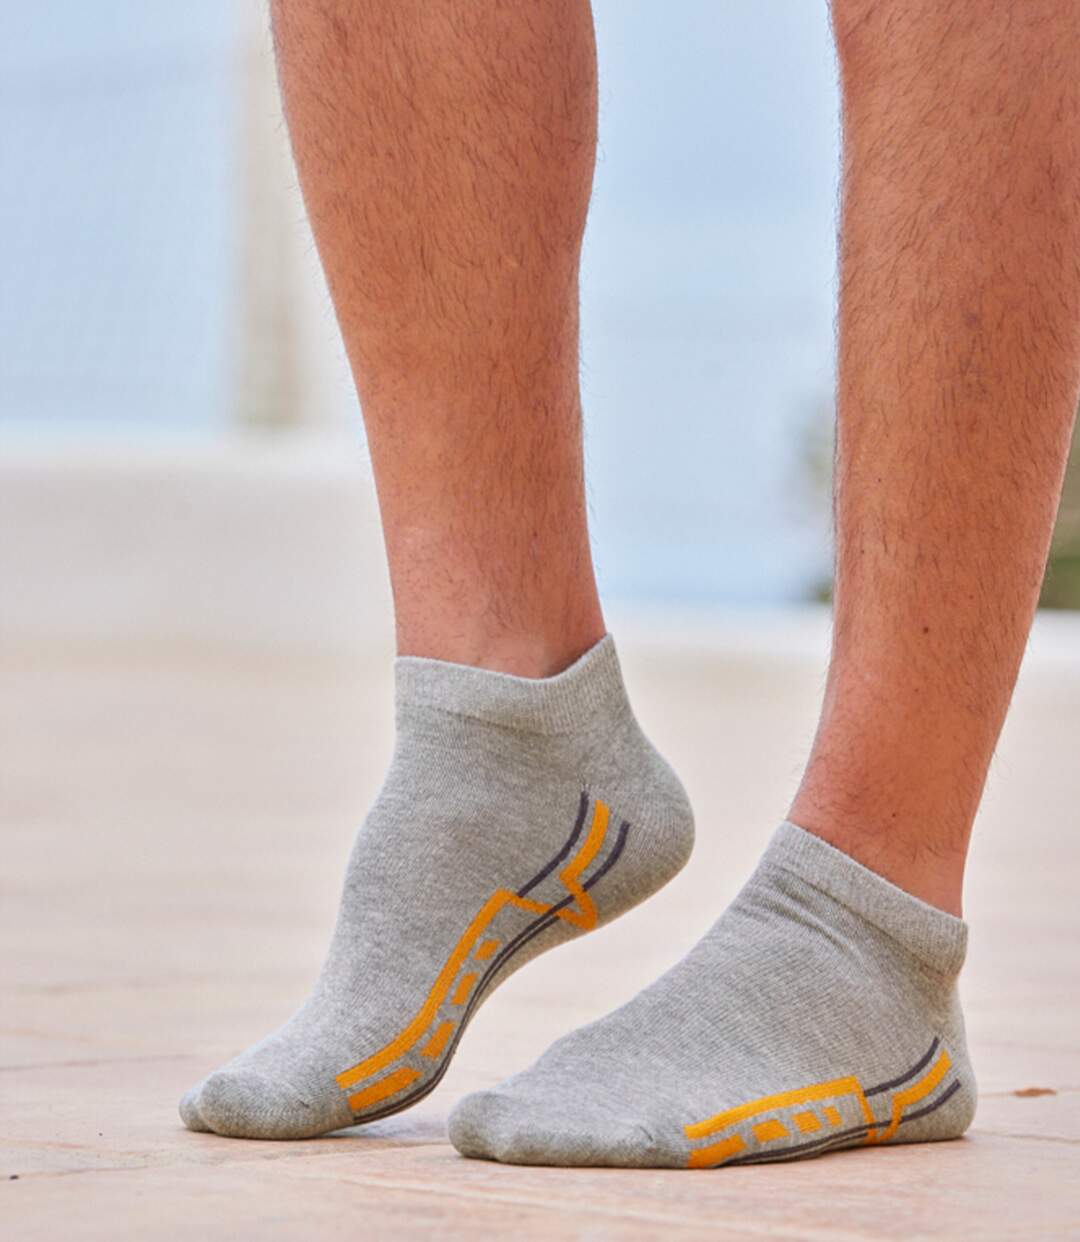 Pack of 4 Pairs of Men's Trainer Socks  Atlas For Men